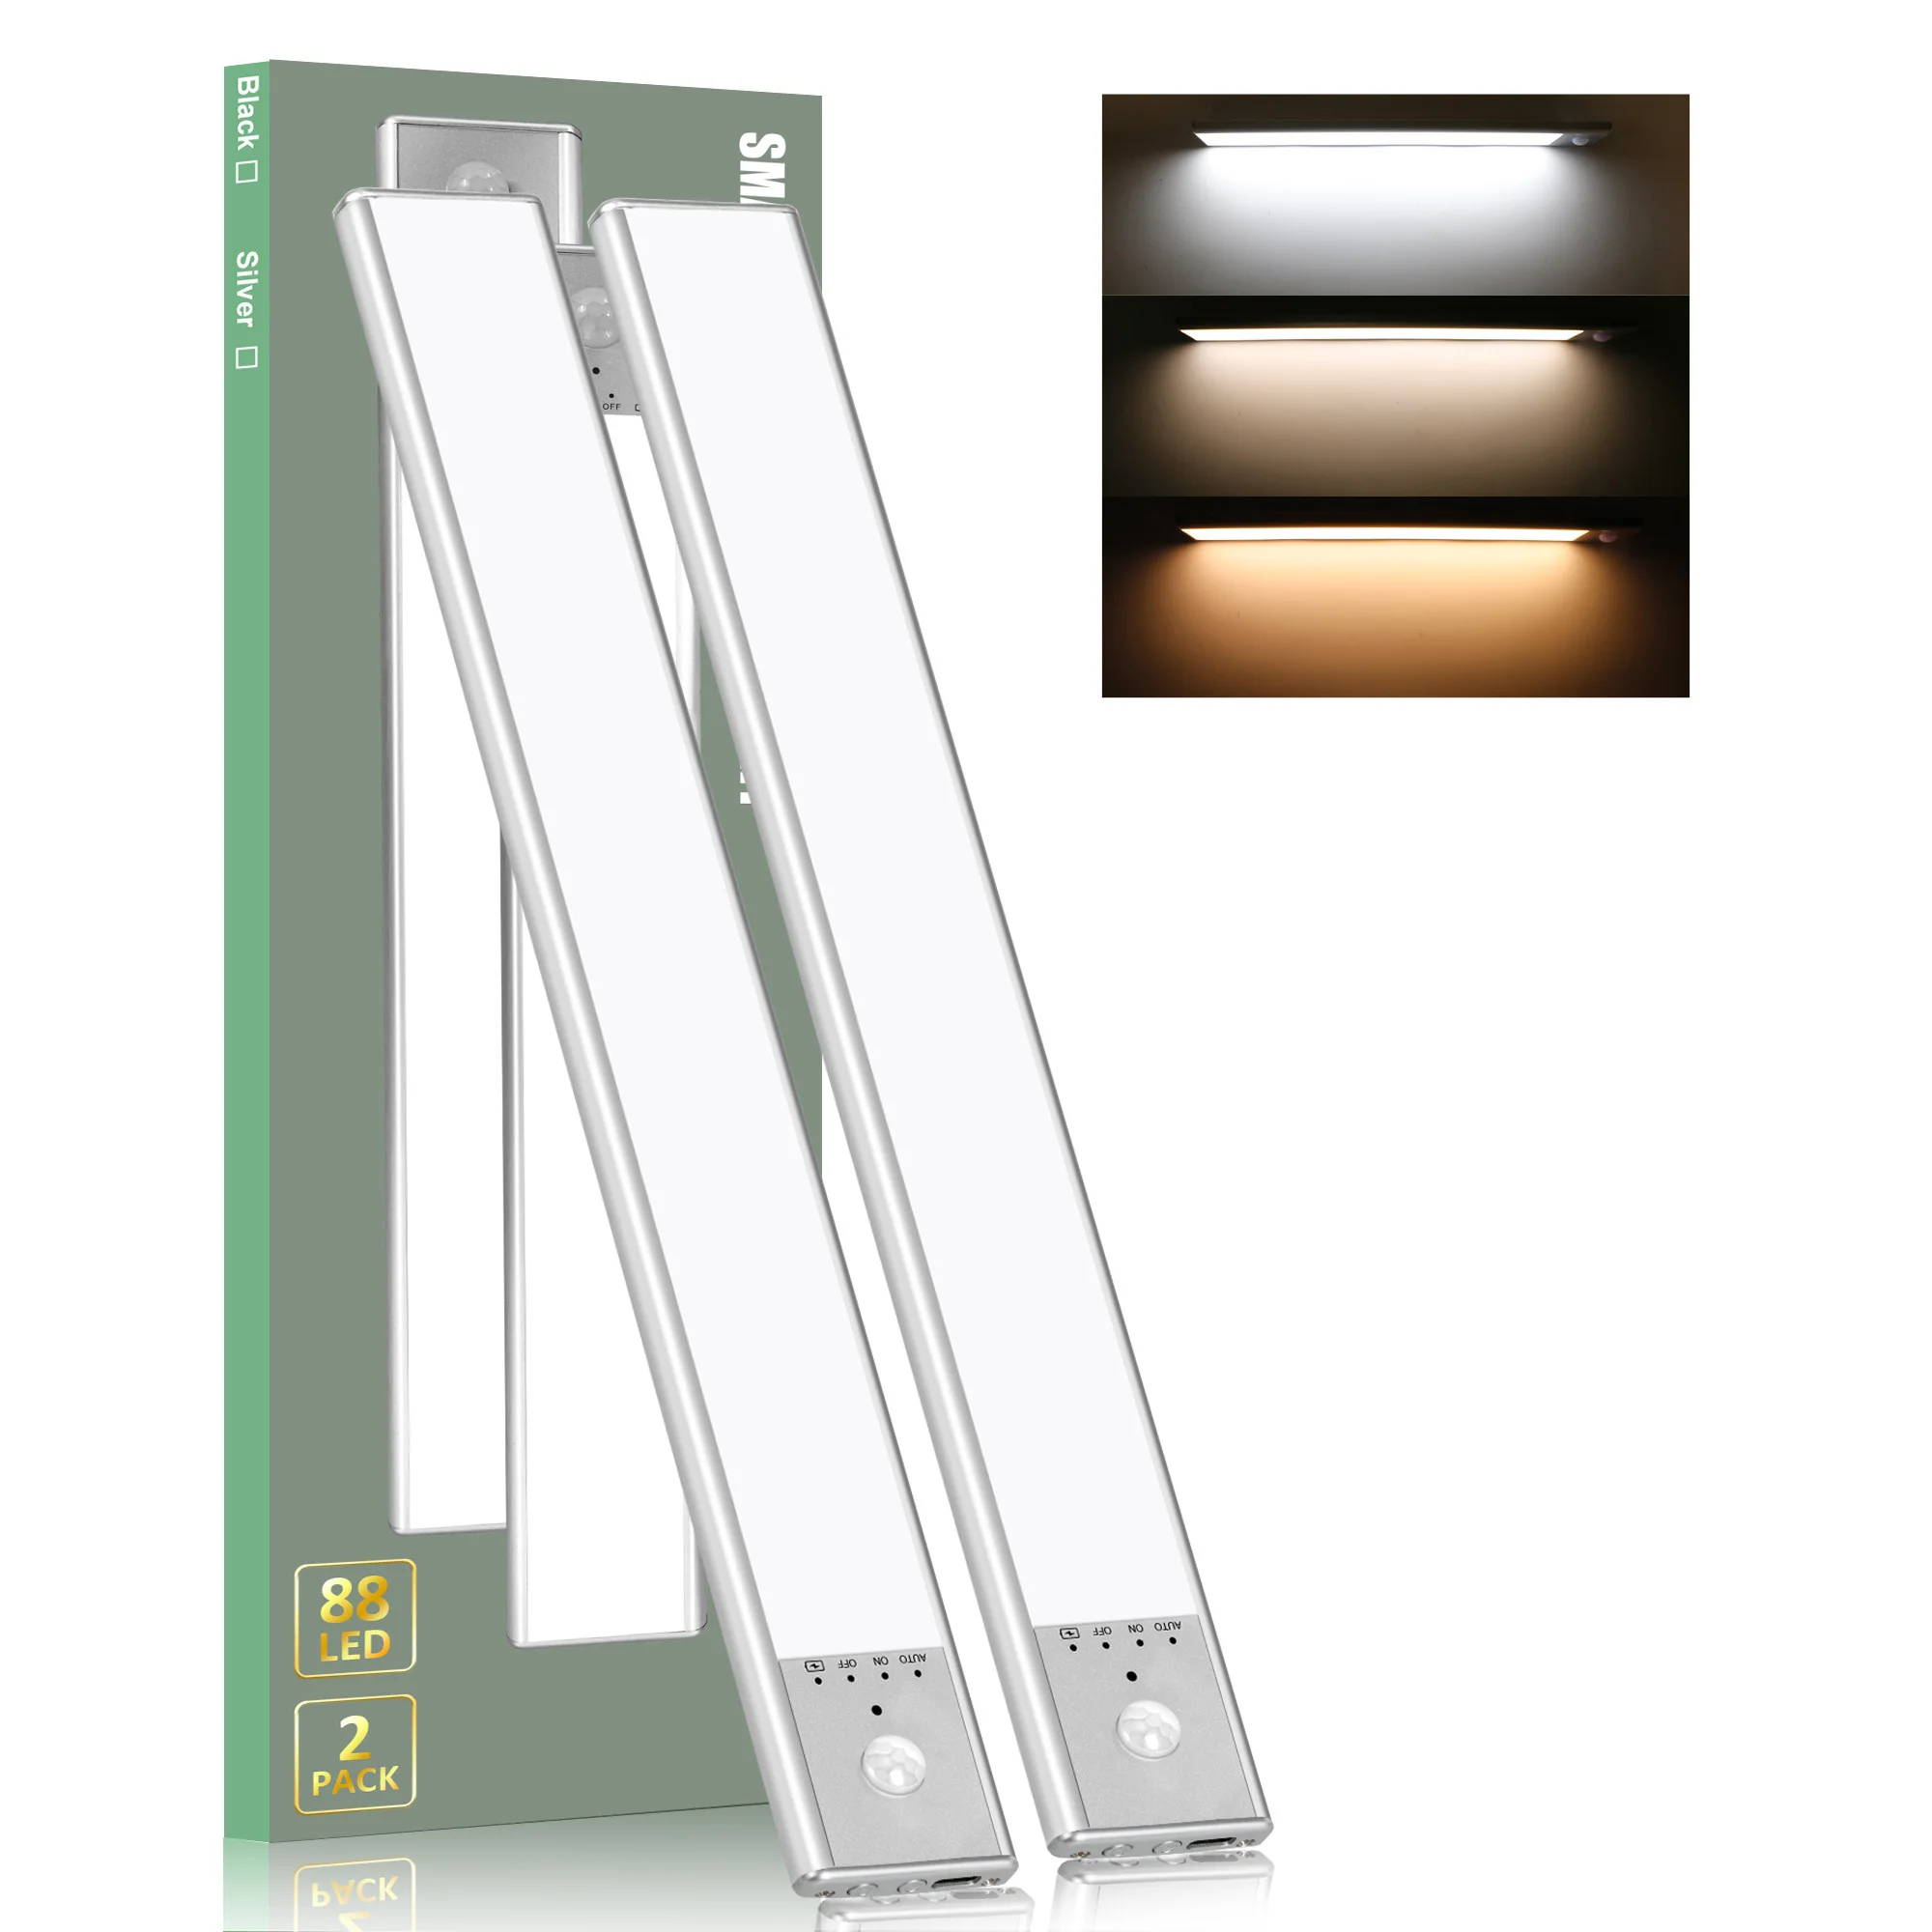 

Светодиодная лампа с перезаряжаемым USB датчиком движения трех цветов в одном шкафу для внутреннего освещения кухонного шкафа (2 шт.)